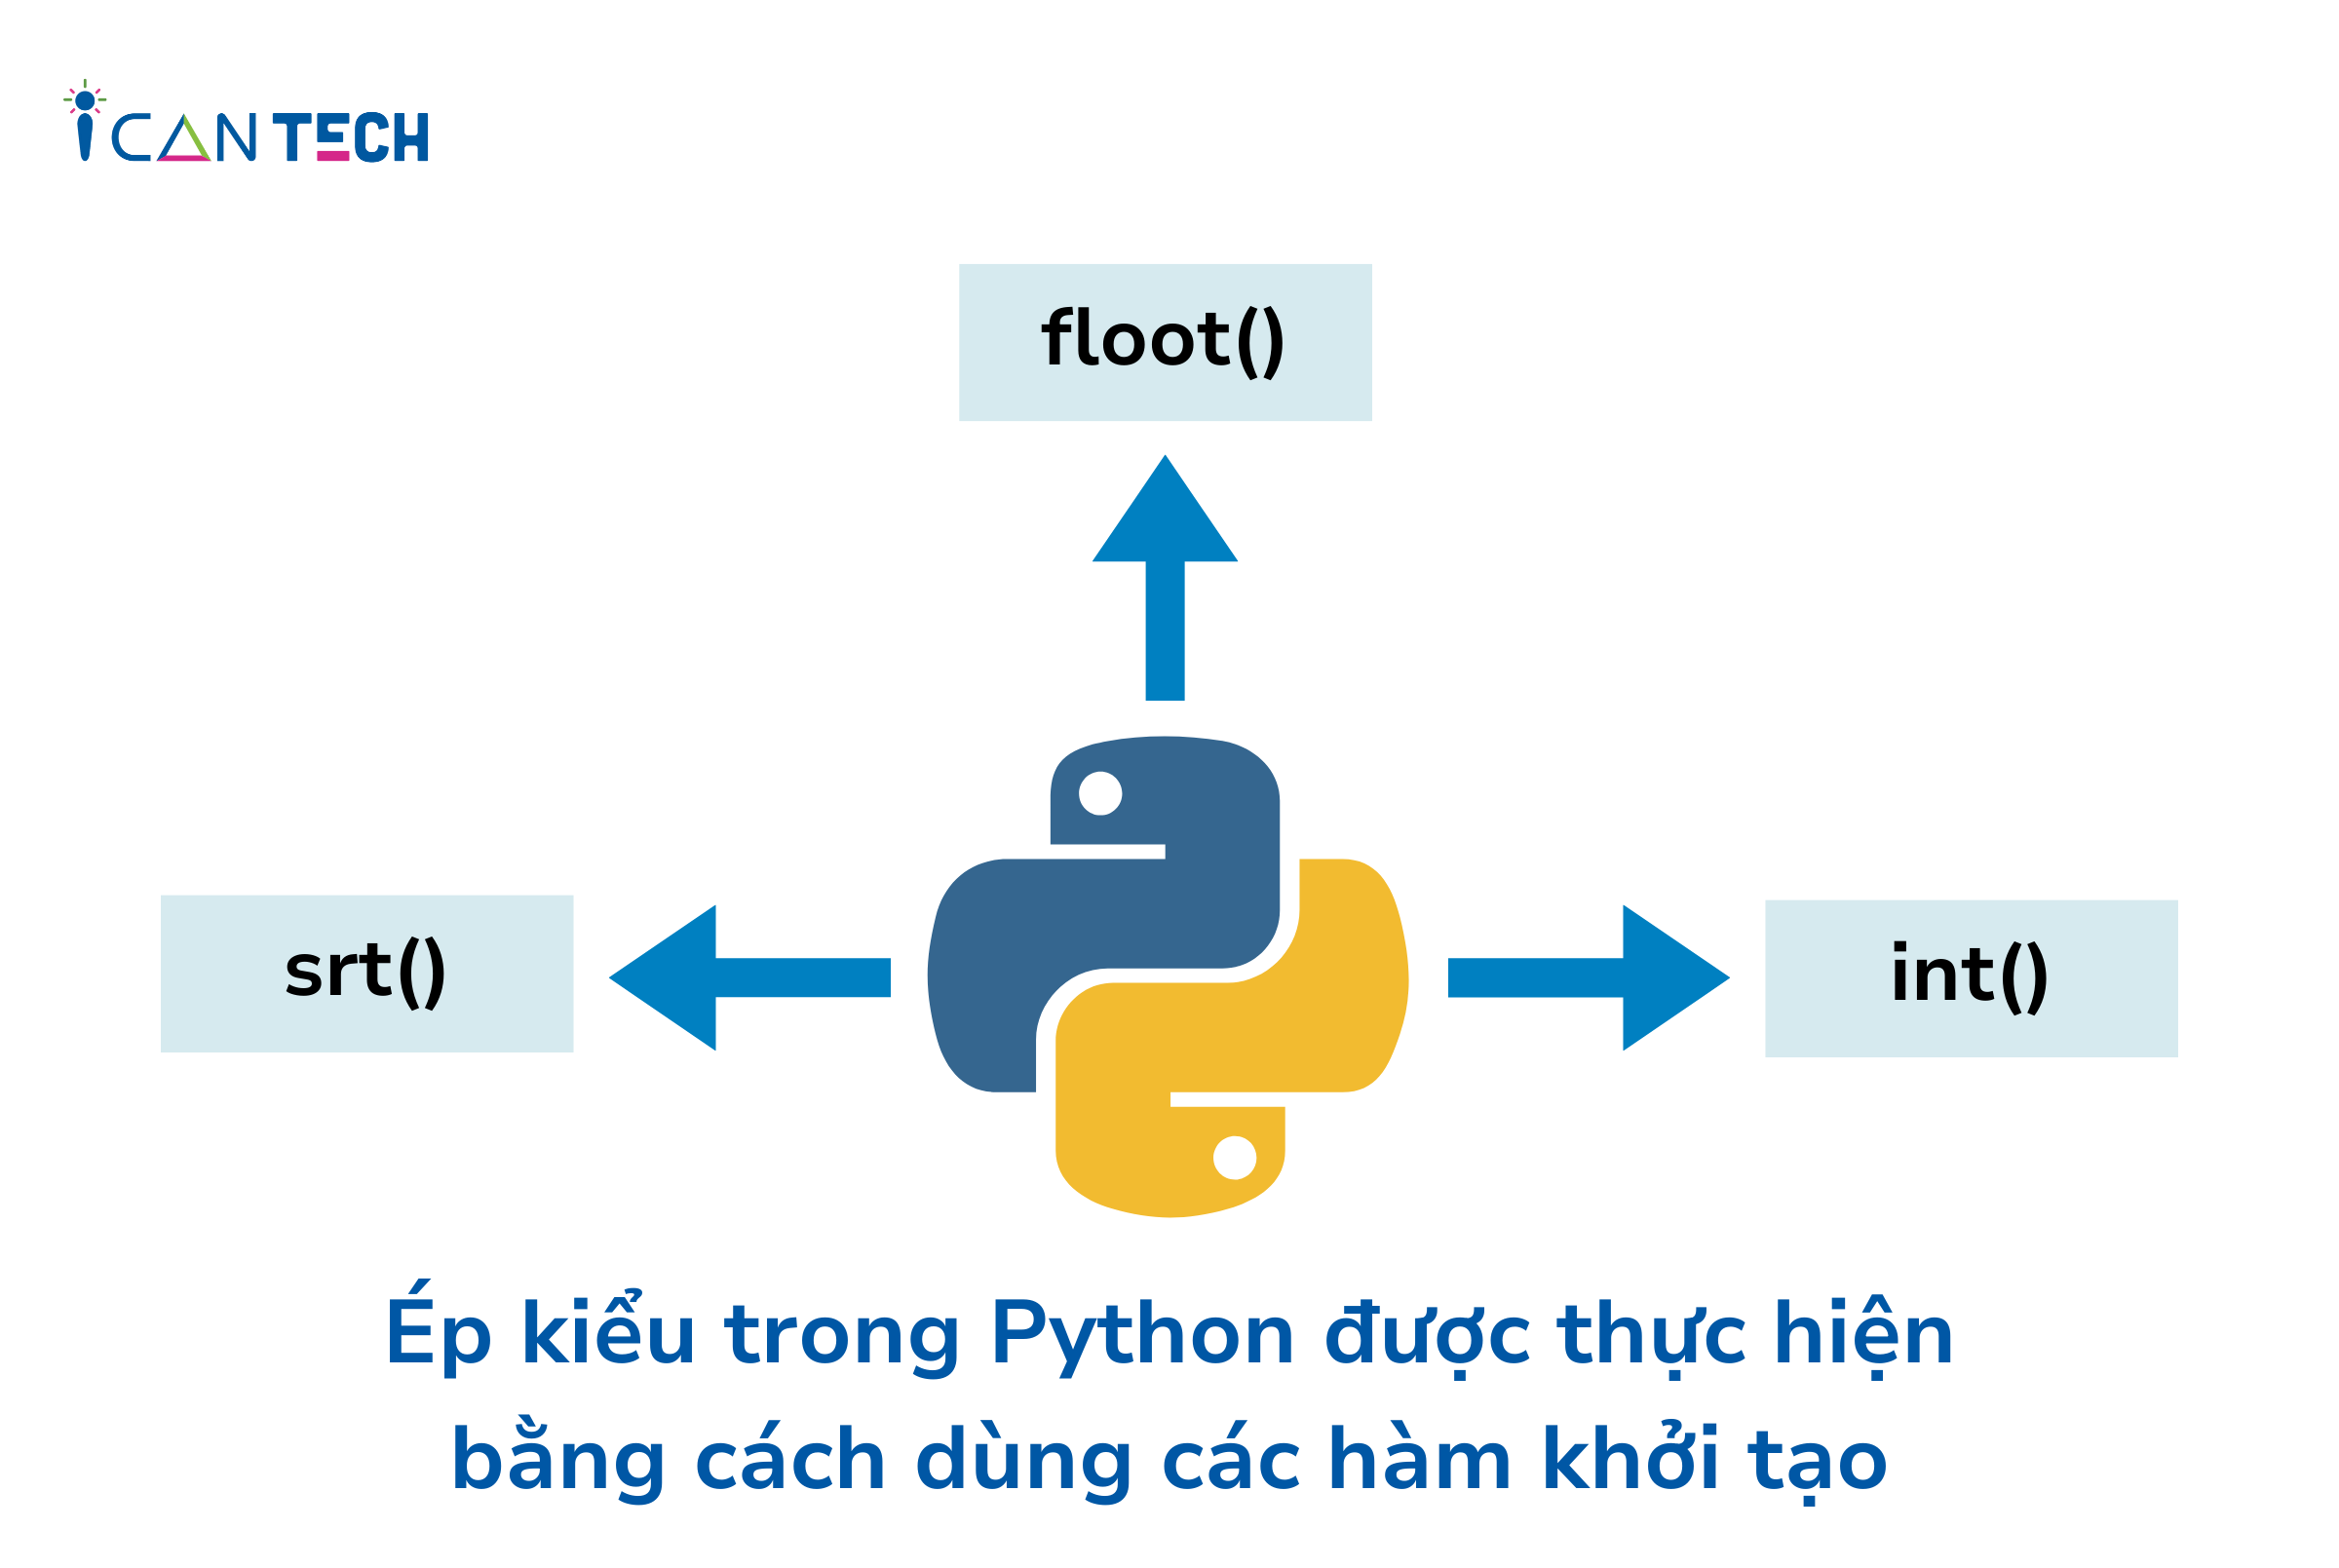 ep-kieu-python